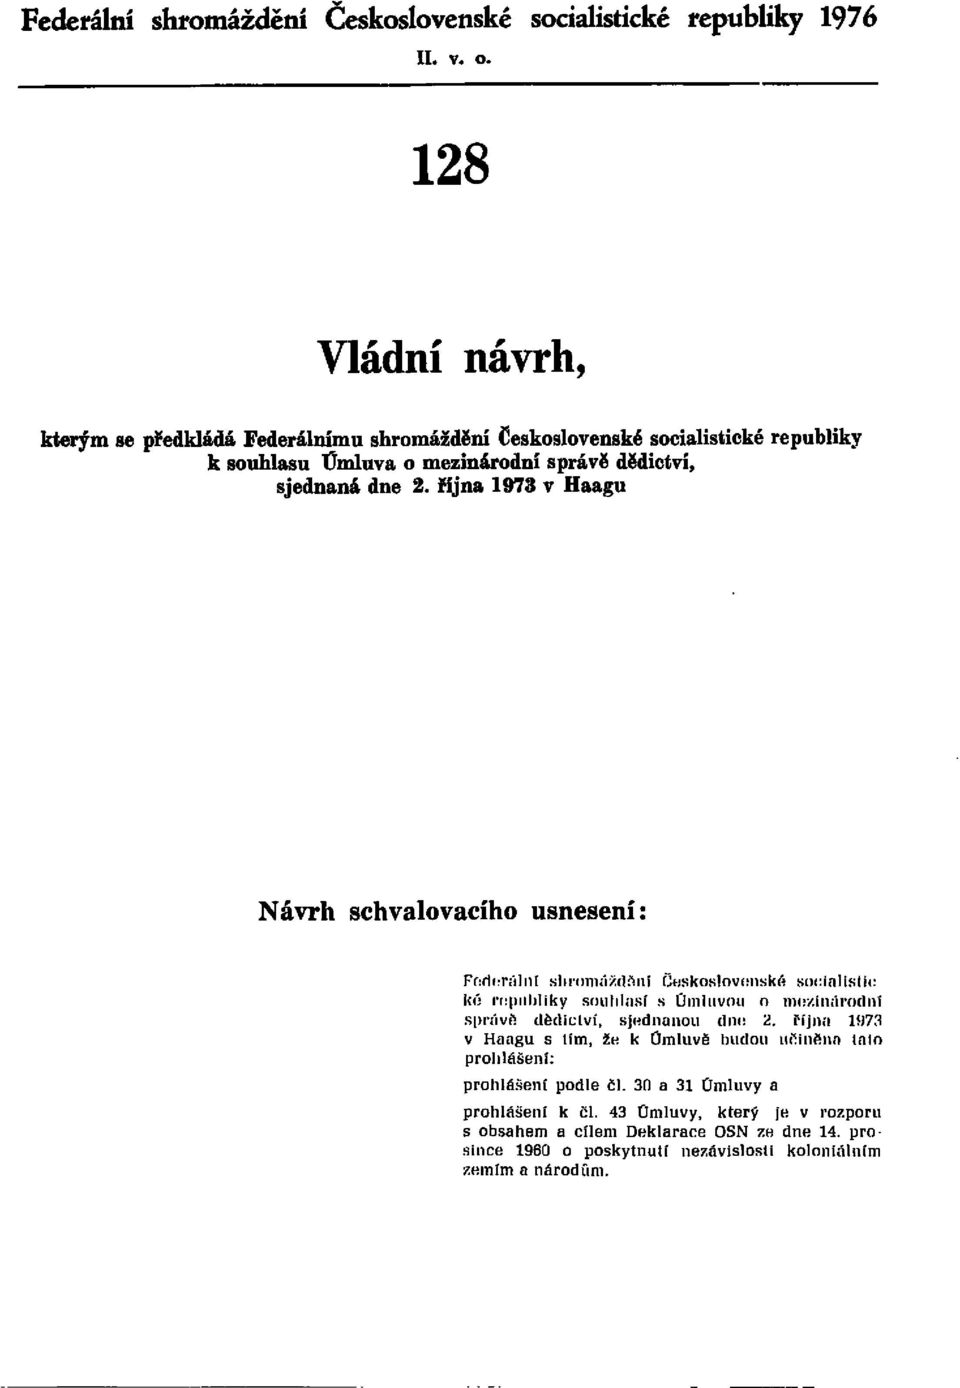 října 1973 v Haagu Návrh schvalovacího usnesení: Federální shromáždění Československé socialistické republiky souhlasí s Úmluvou o mezinárodní správě dědictví, sjednanou